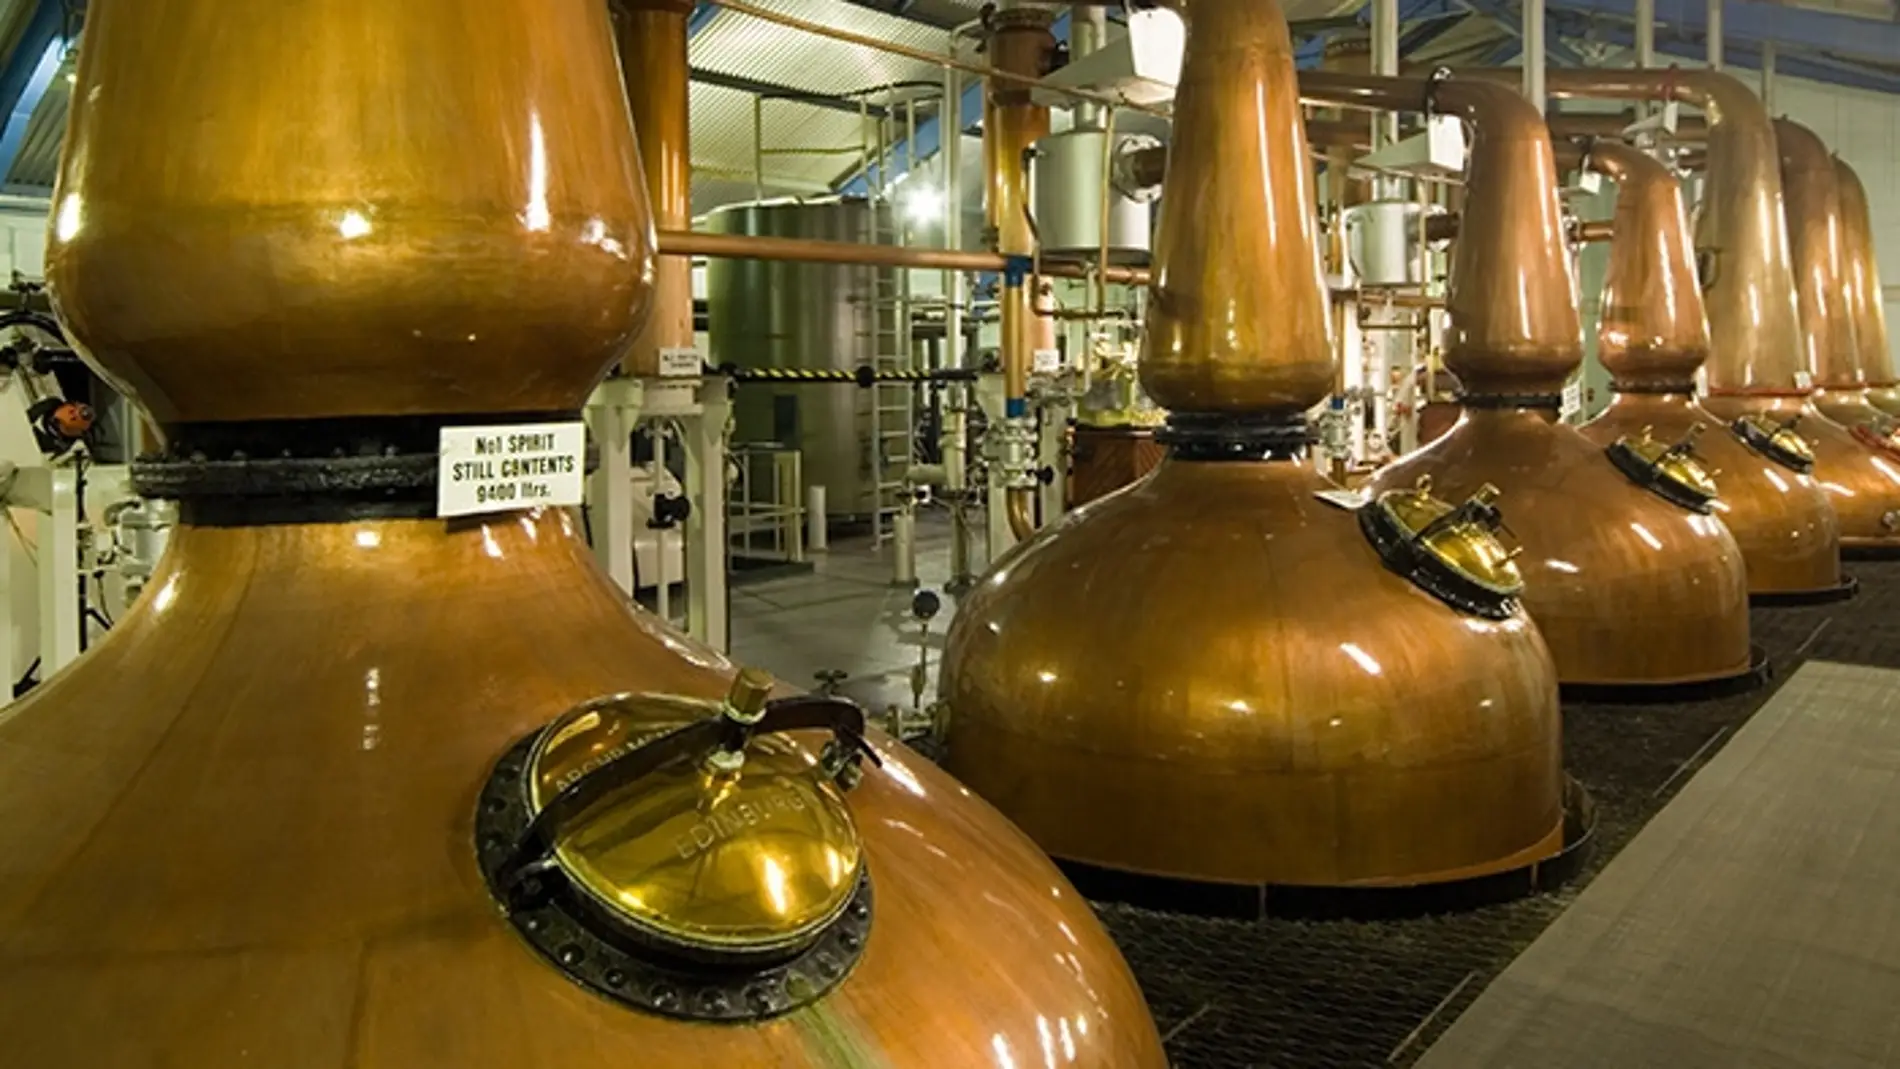  Estas son las 5 regiones del whisky escocés y las destilerías que puedes visitar en ellas